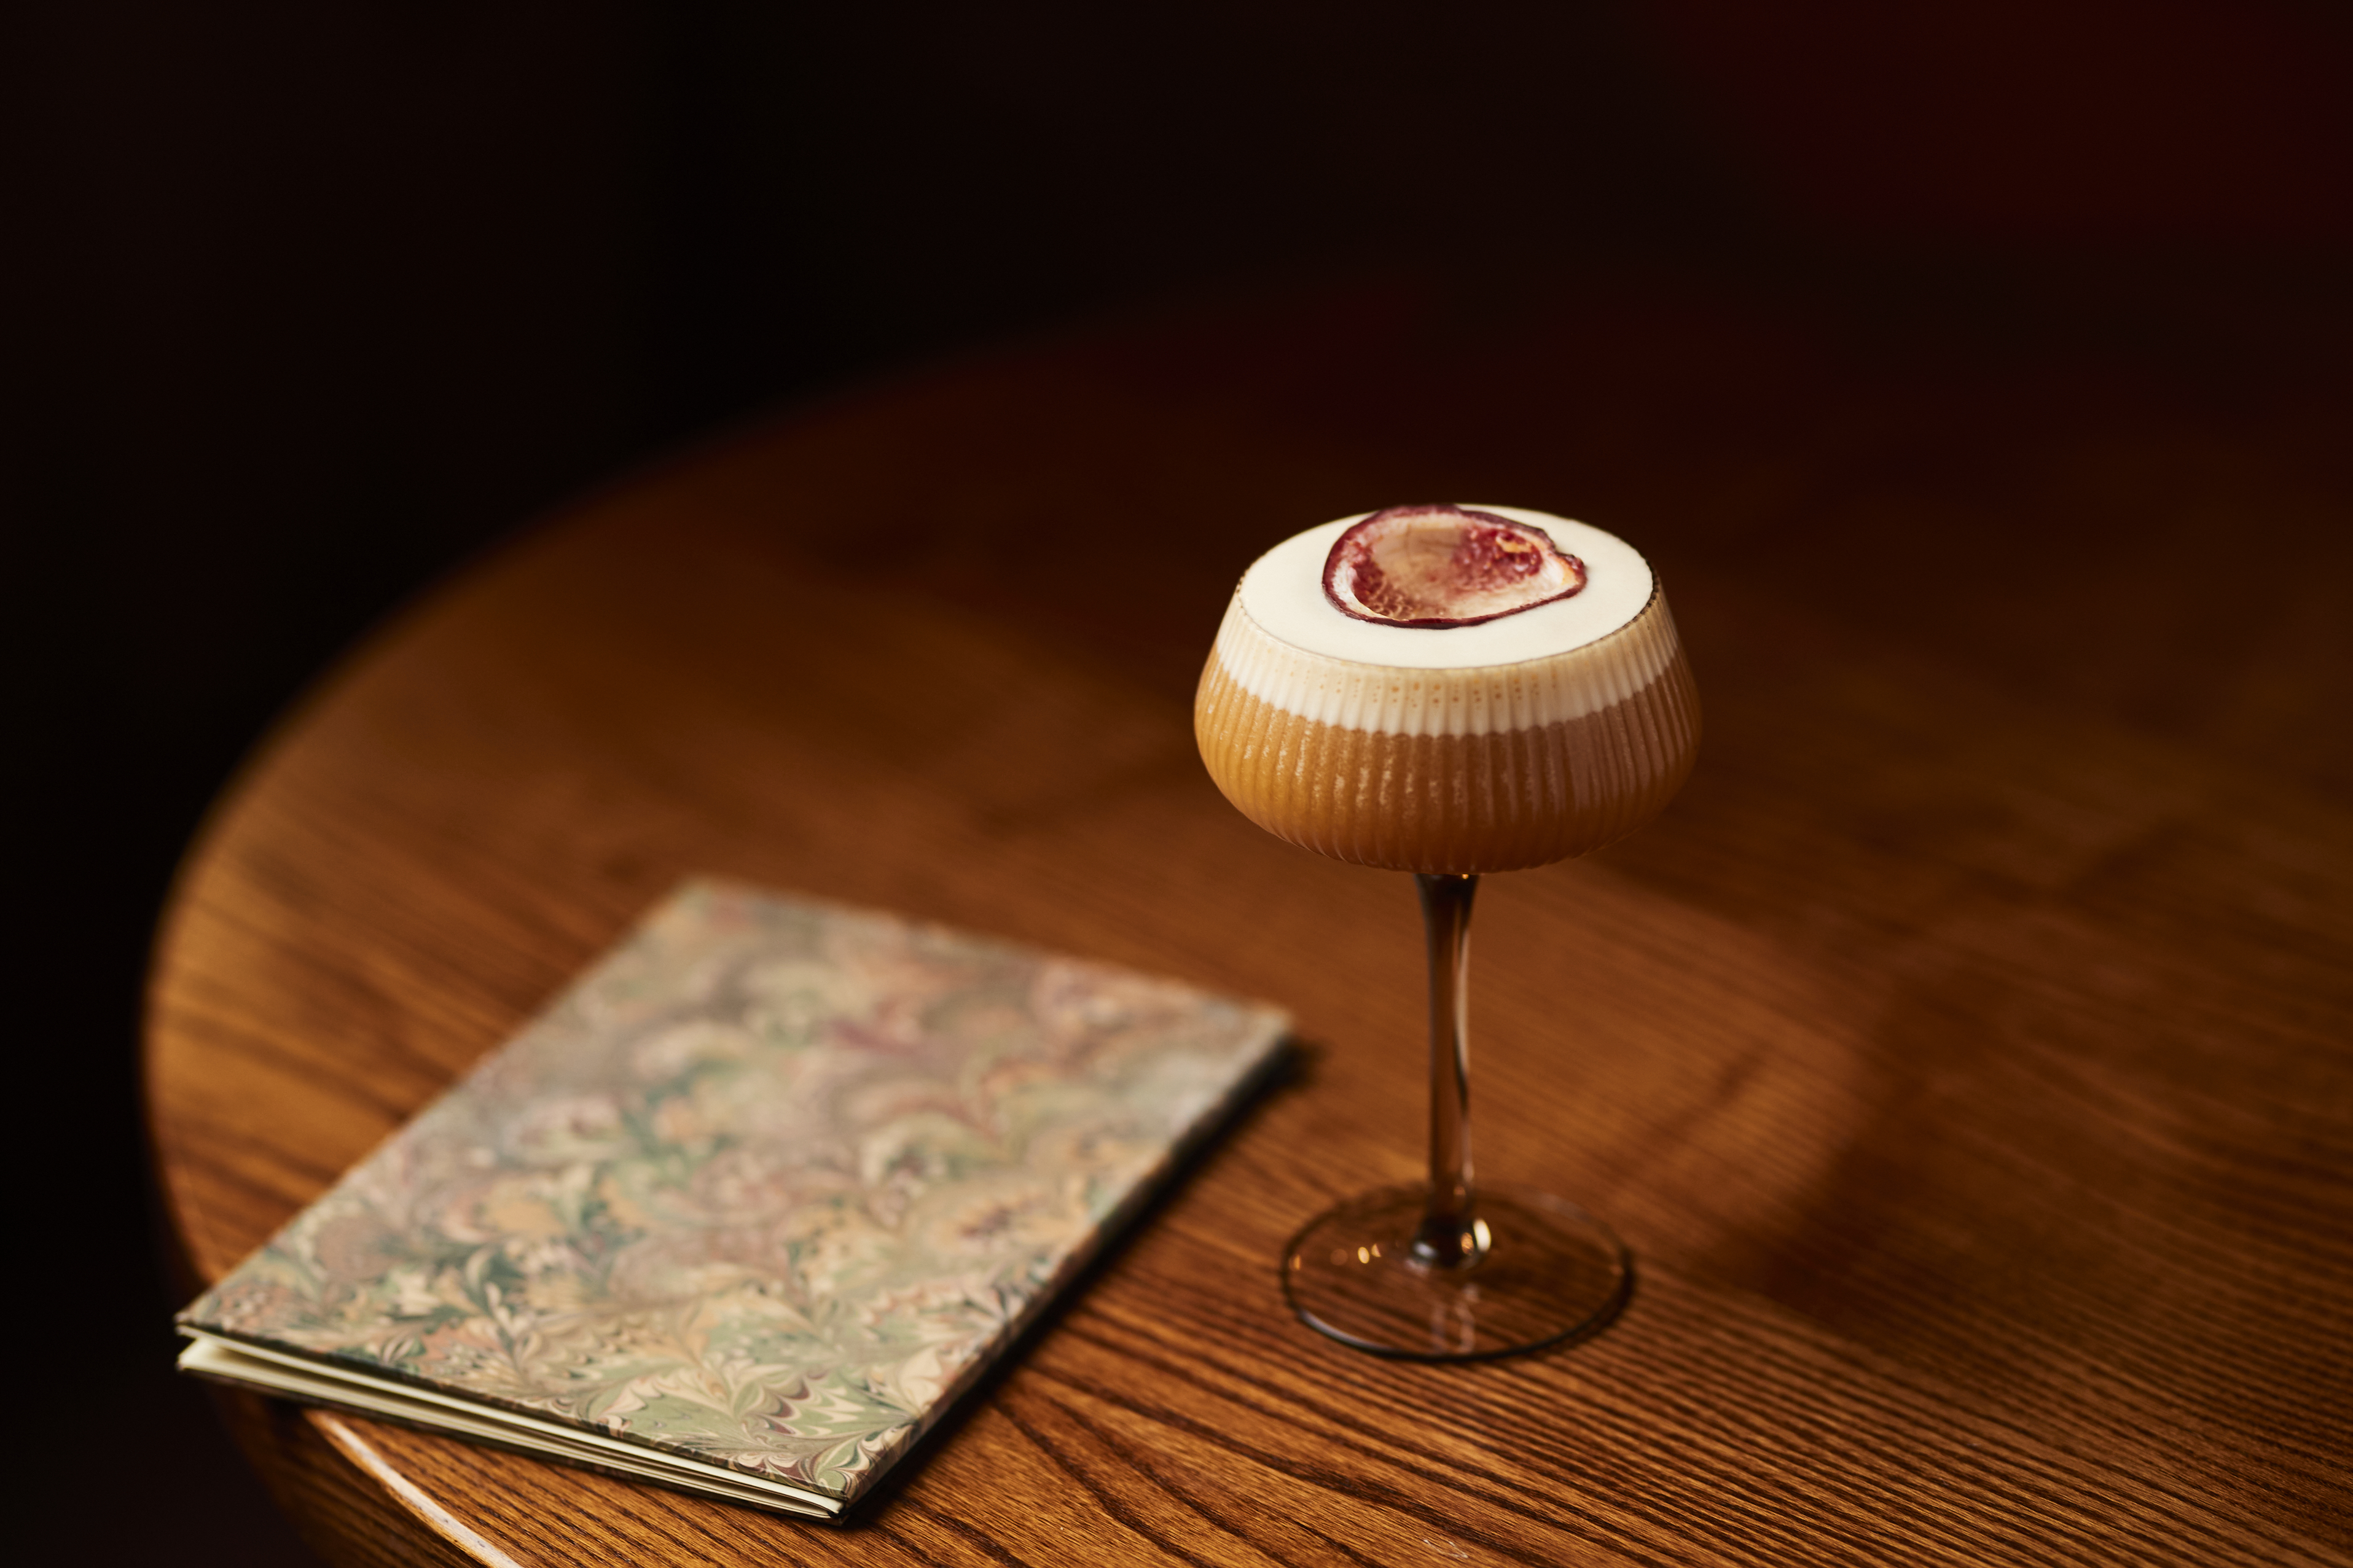 A Pornstar Martini next to a menu.